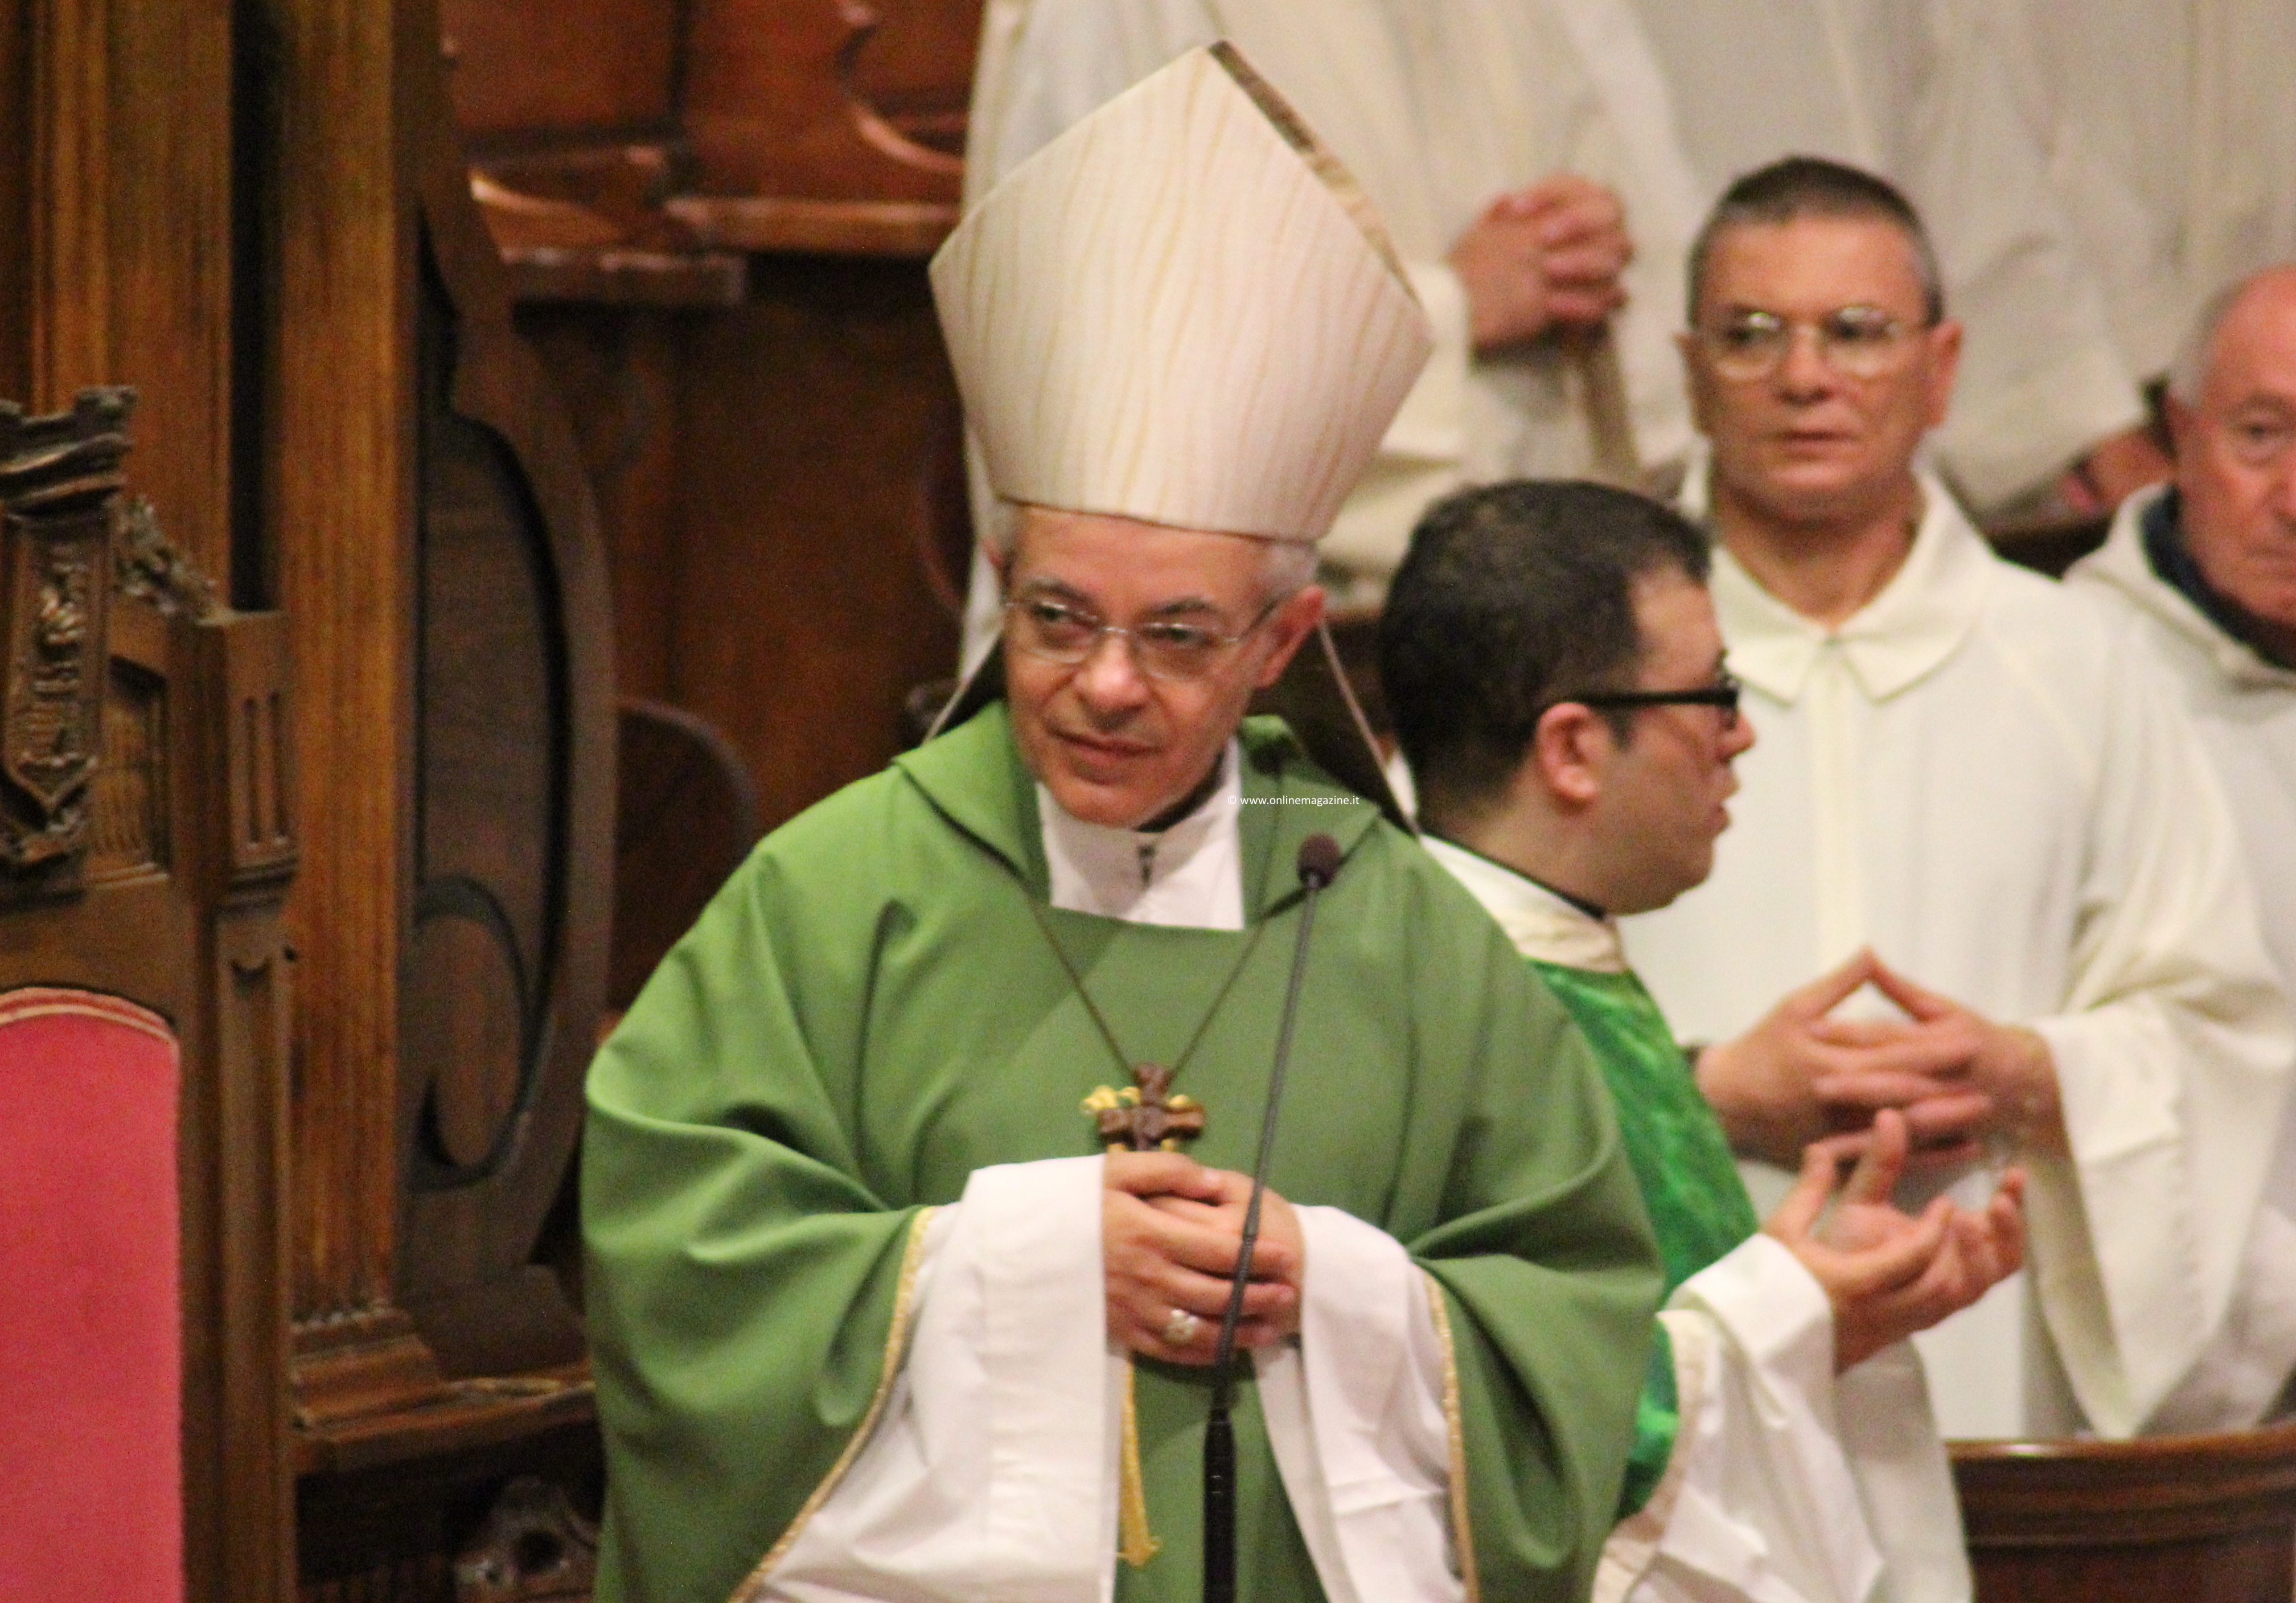 Castellammare. Il Vescovo Alfano: ”Uscire dall’indifferenza e scoraggiamento per cambiare la città superando le contrapposizioni”